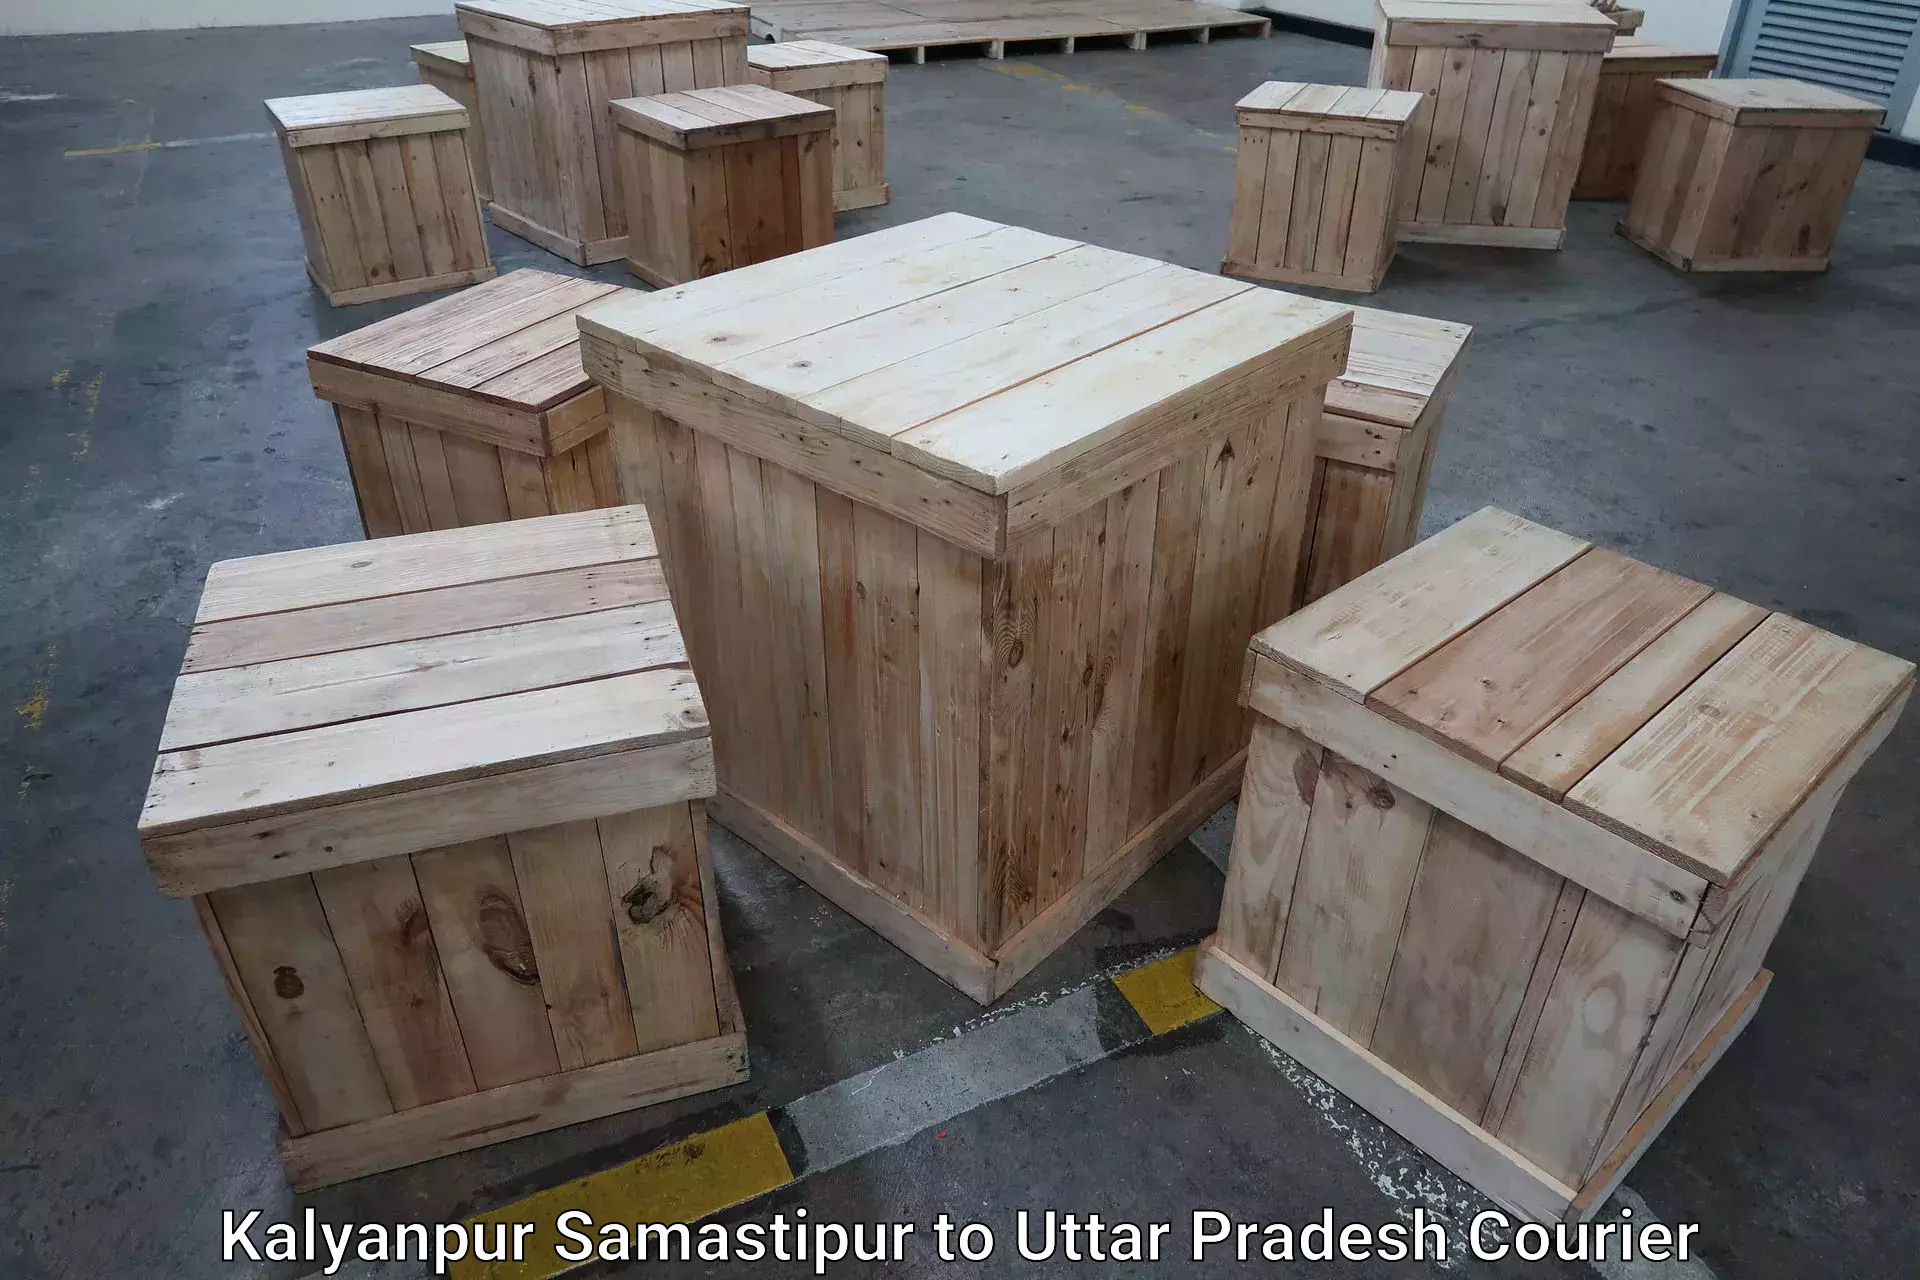 Baggage transport network Kalyanpur Samastipur to Uttar Pradesh